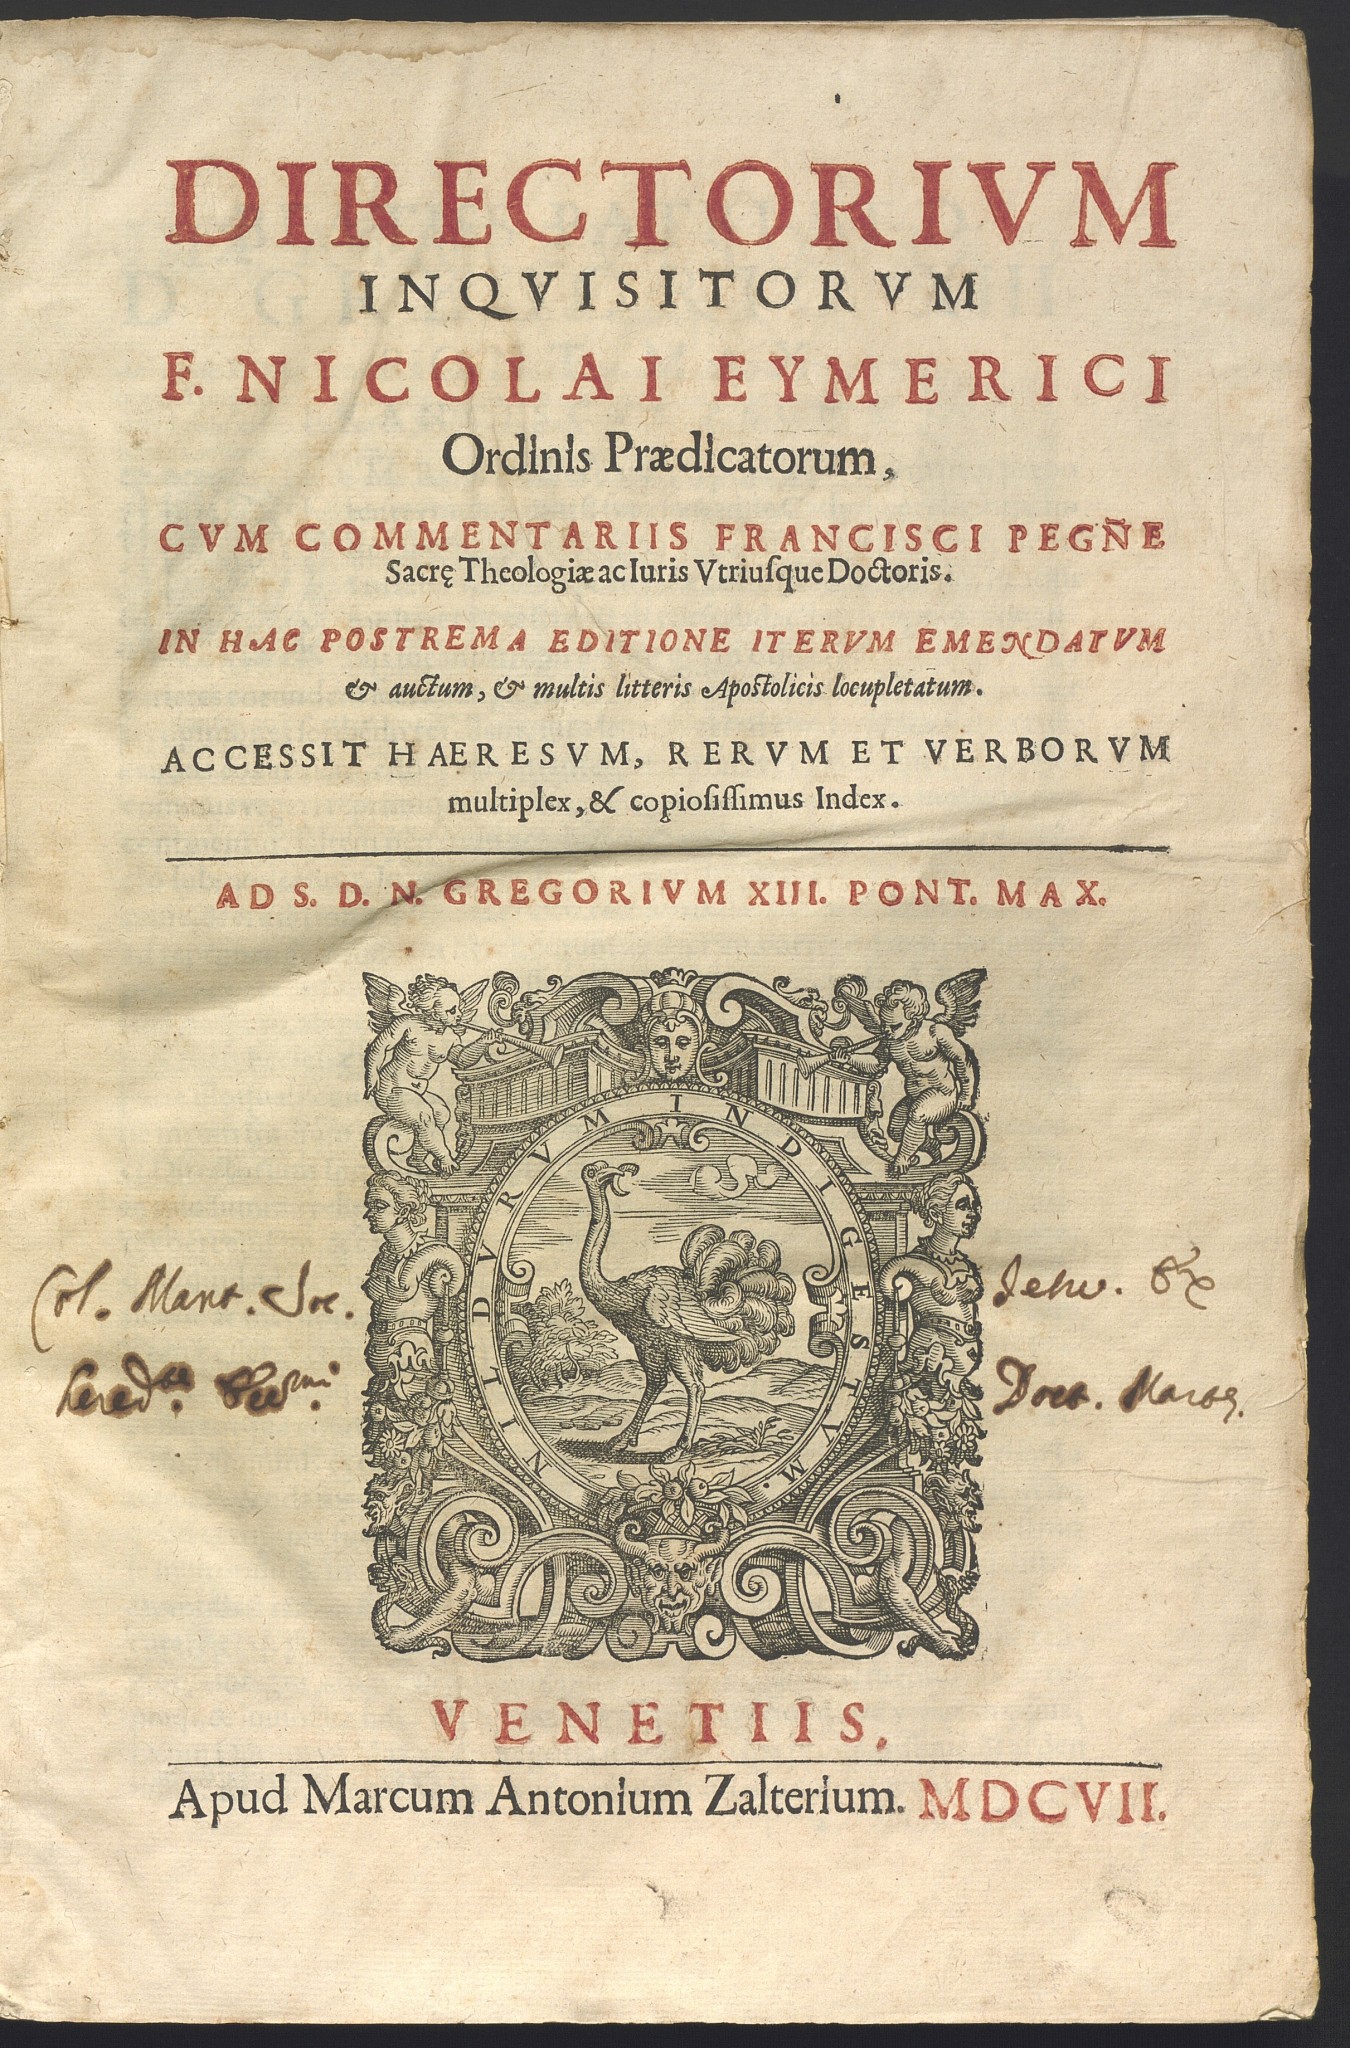 Nicolas Eymerich, Directorium inquisitorum (1607)